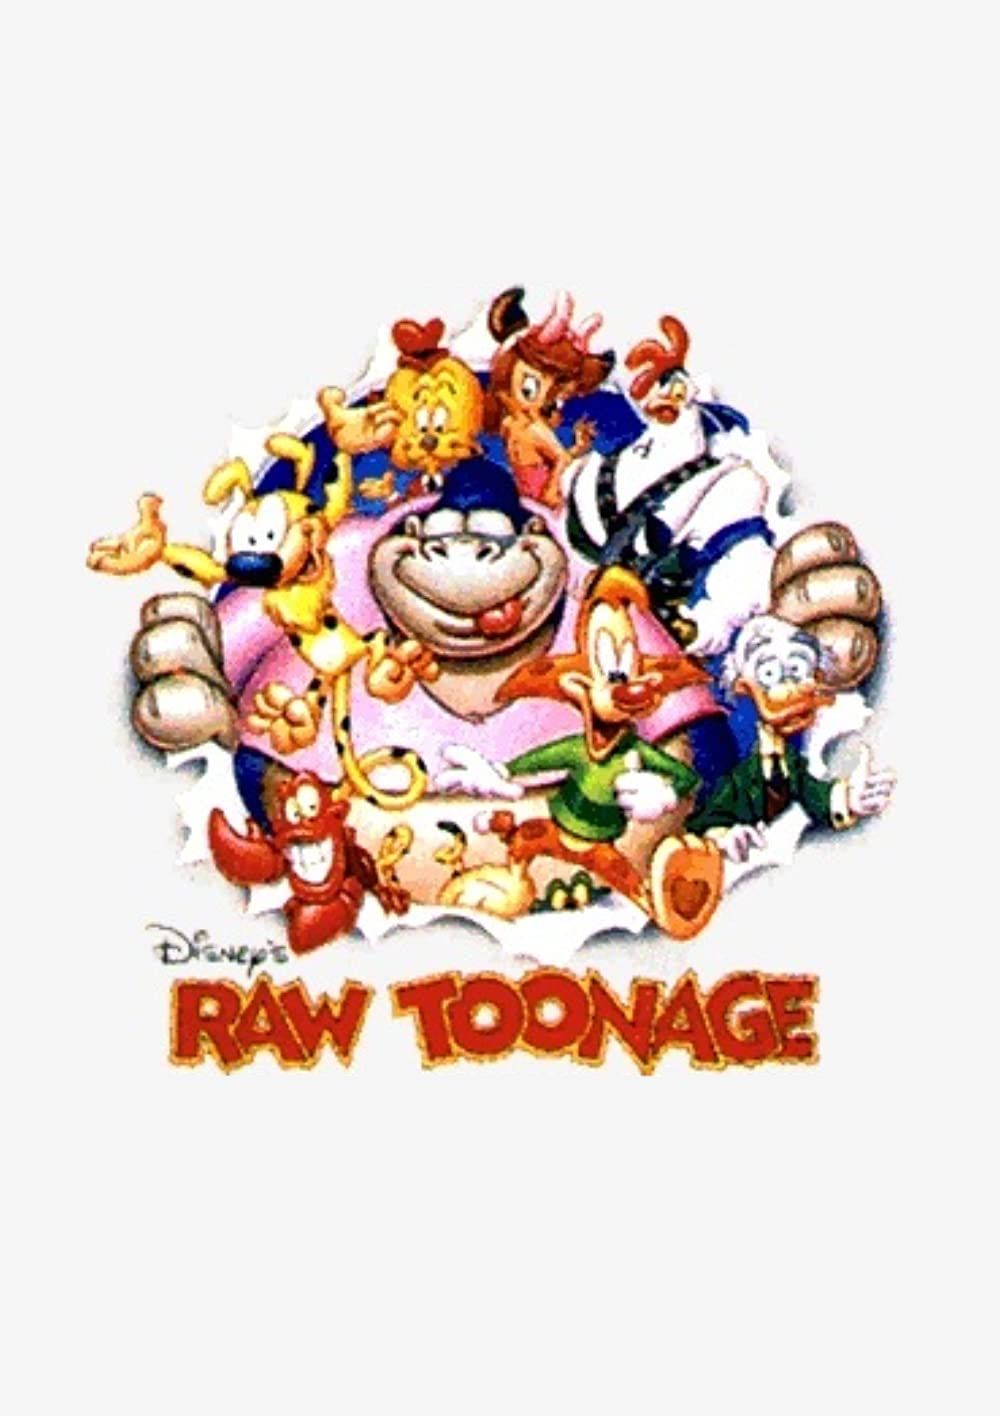 Raw Toonage ne zaman